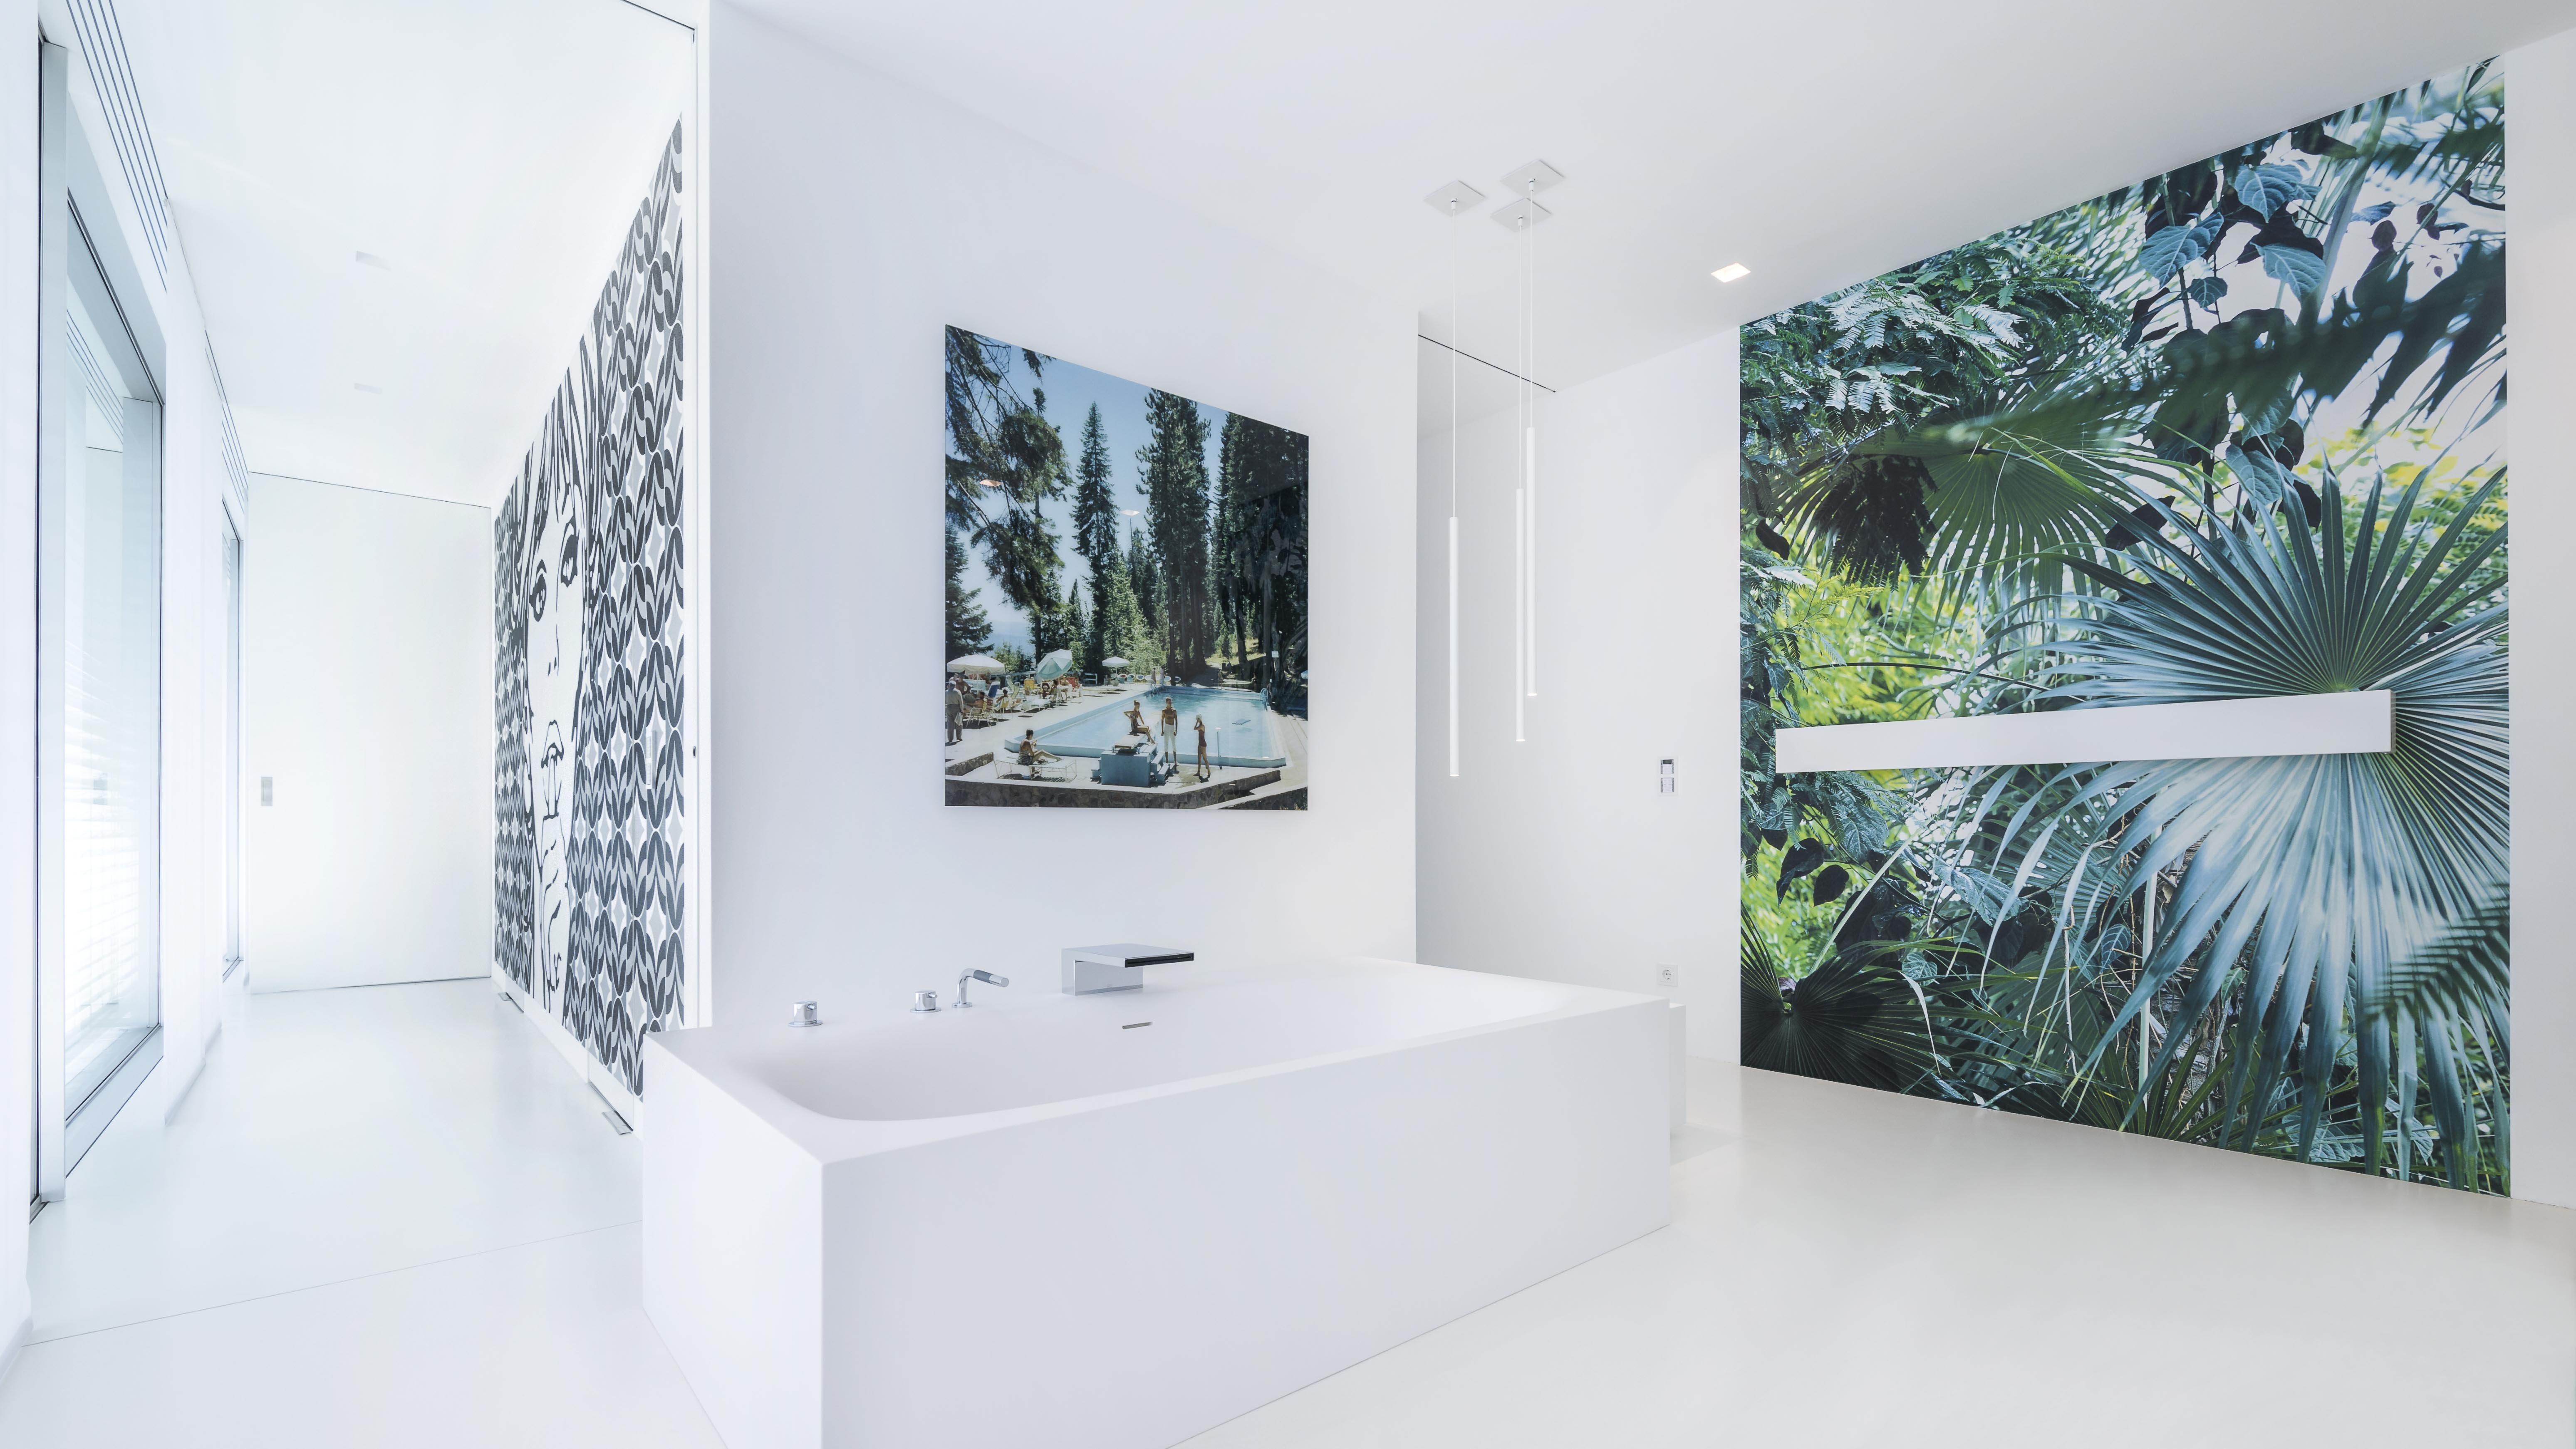 Fototapeten über Badewanne aus Corian, gespachtelter Betonestrich, grafisch, Schwalleinlauf Badewanne